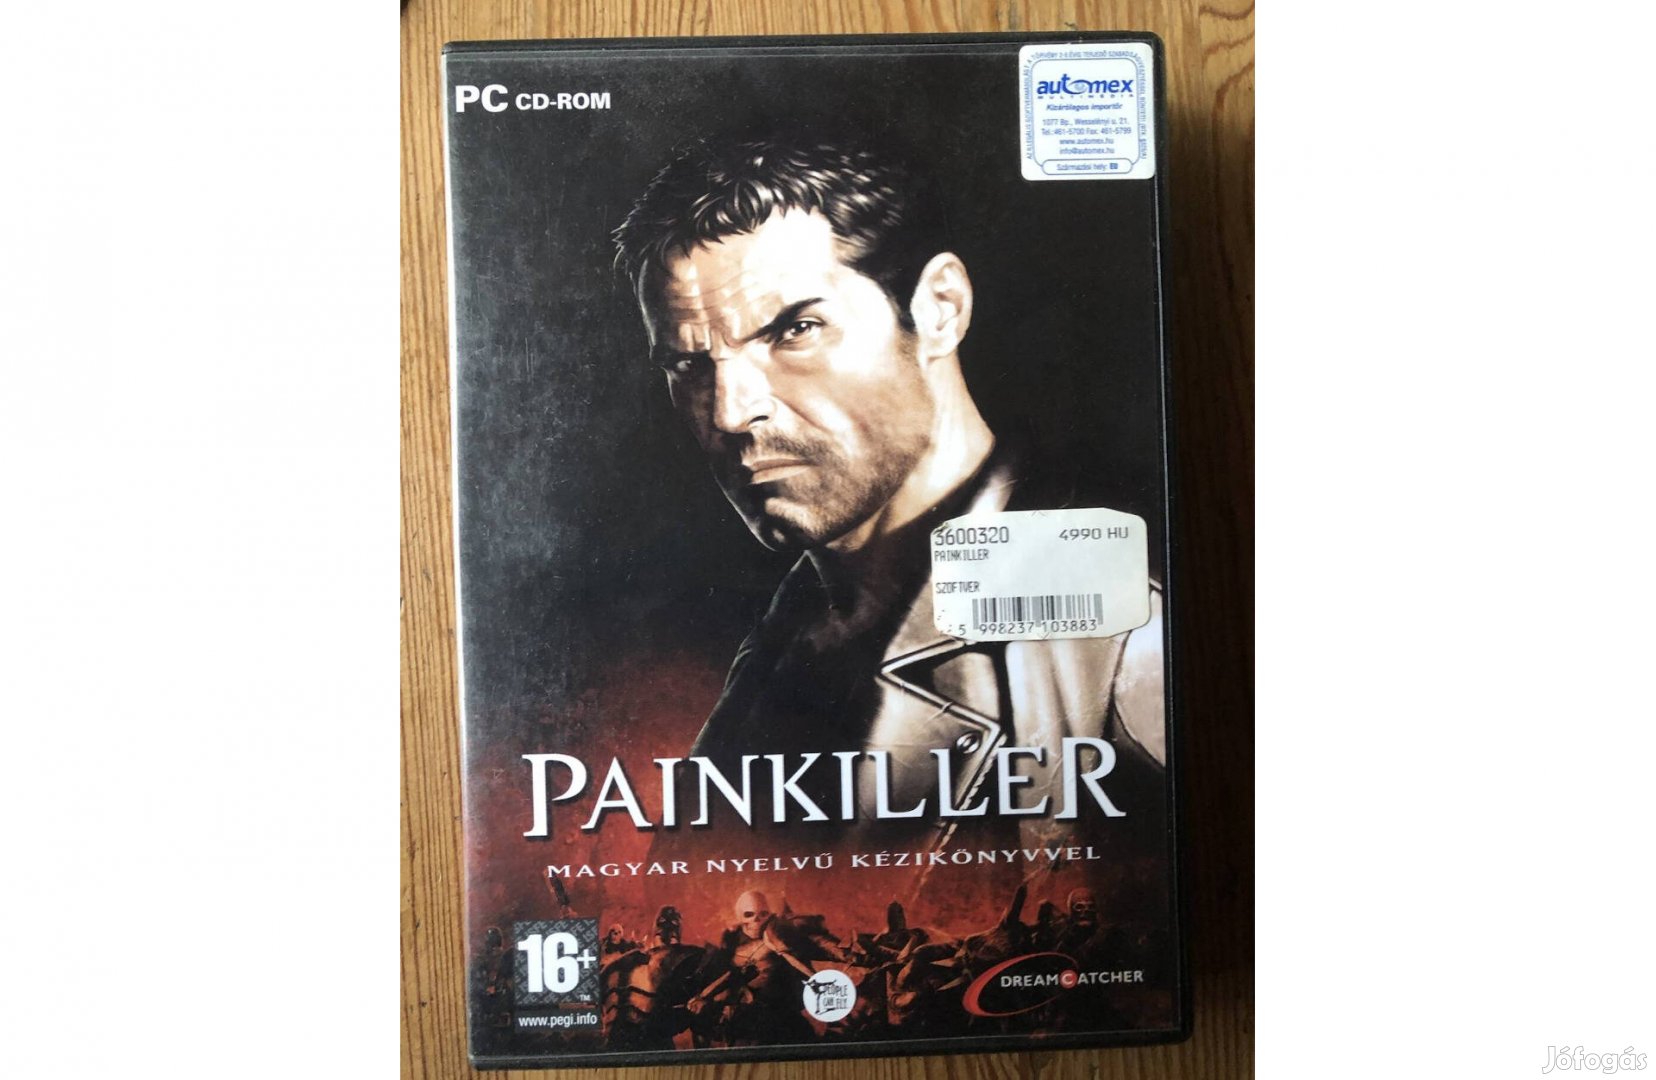 Painkiller számítógépes játék Pc CD 4500 Ft: Lenti